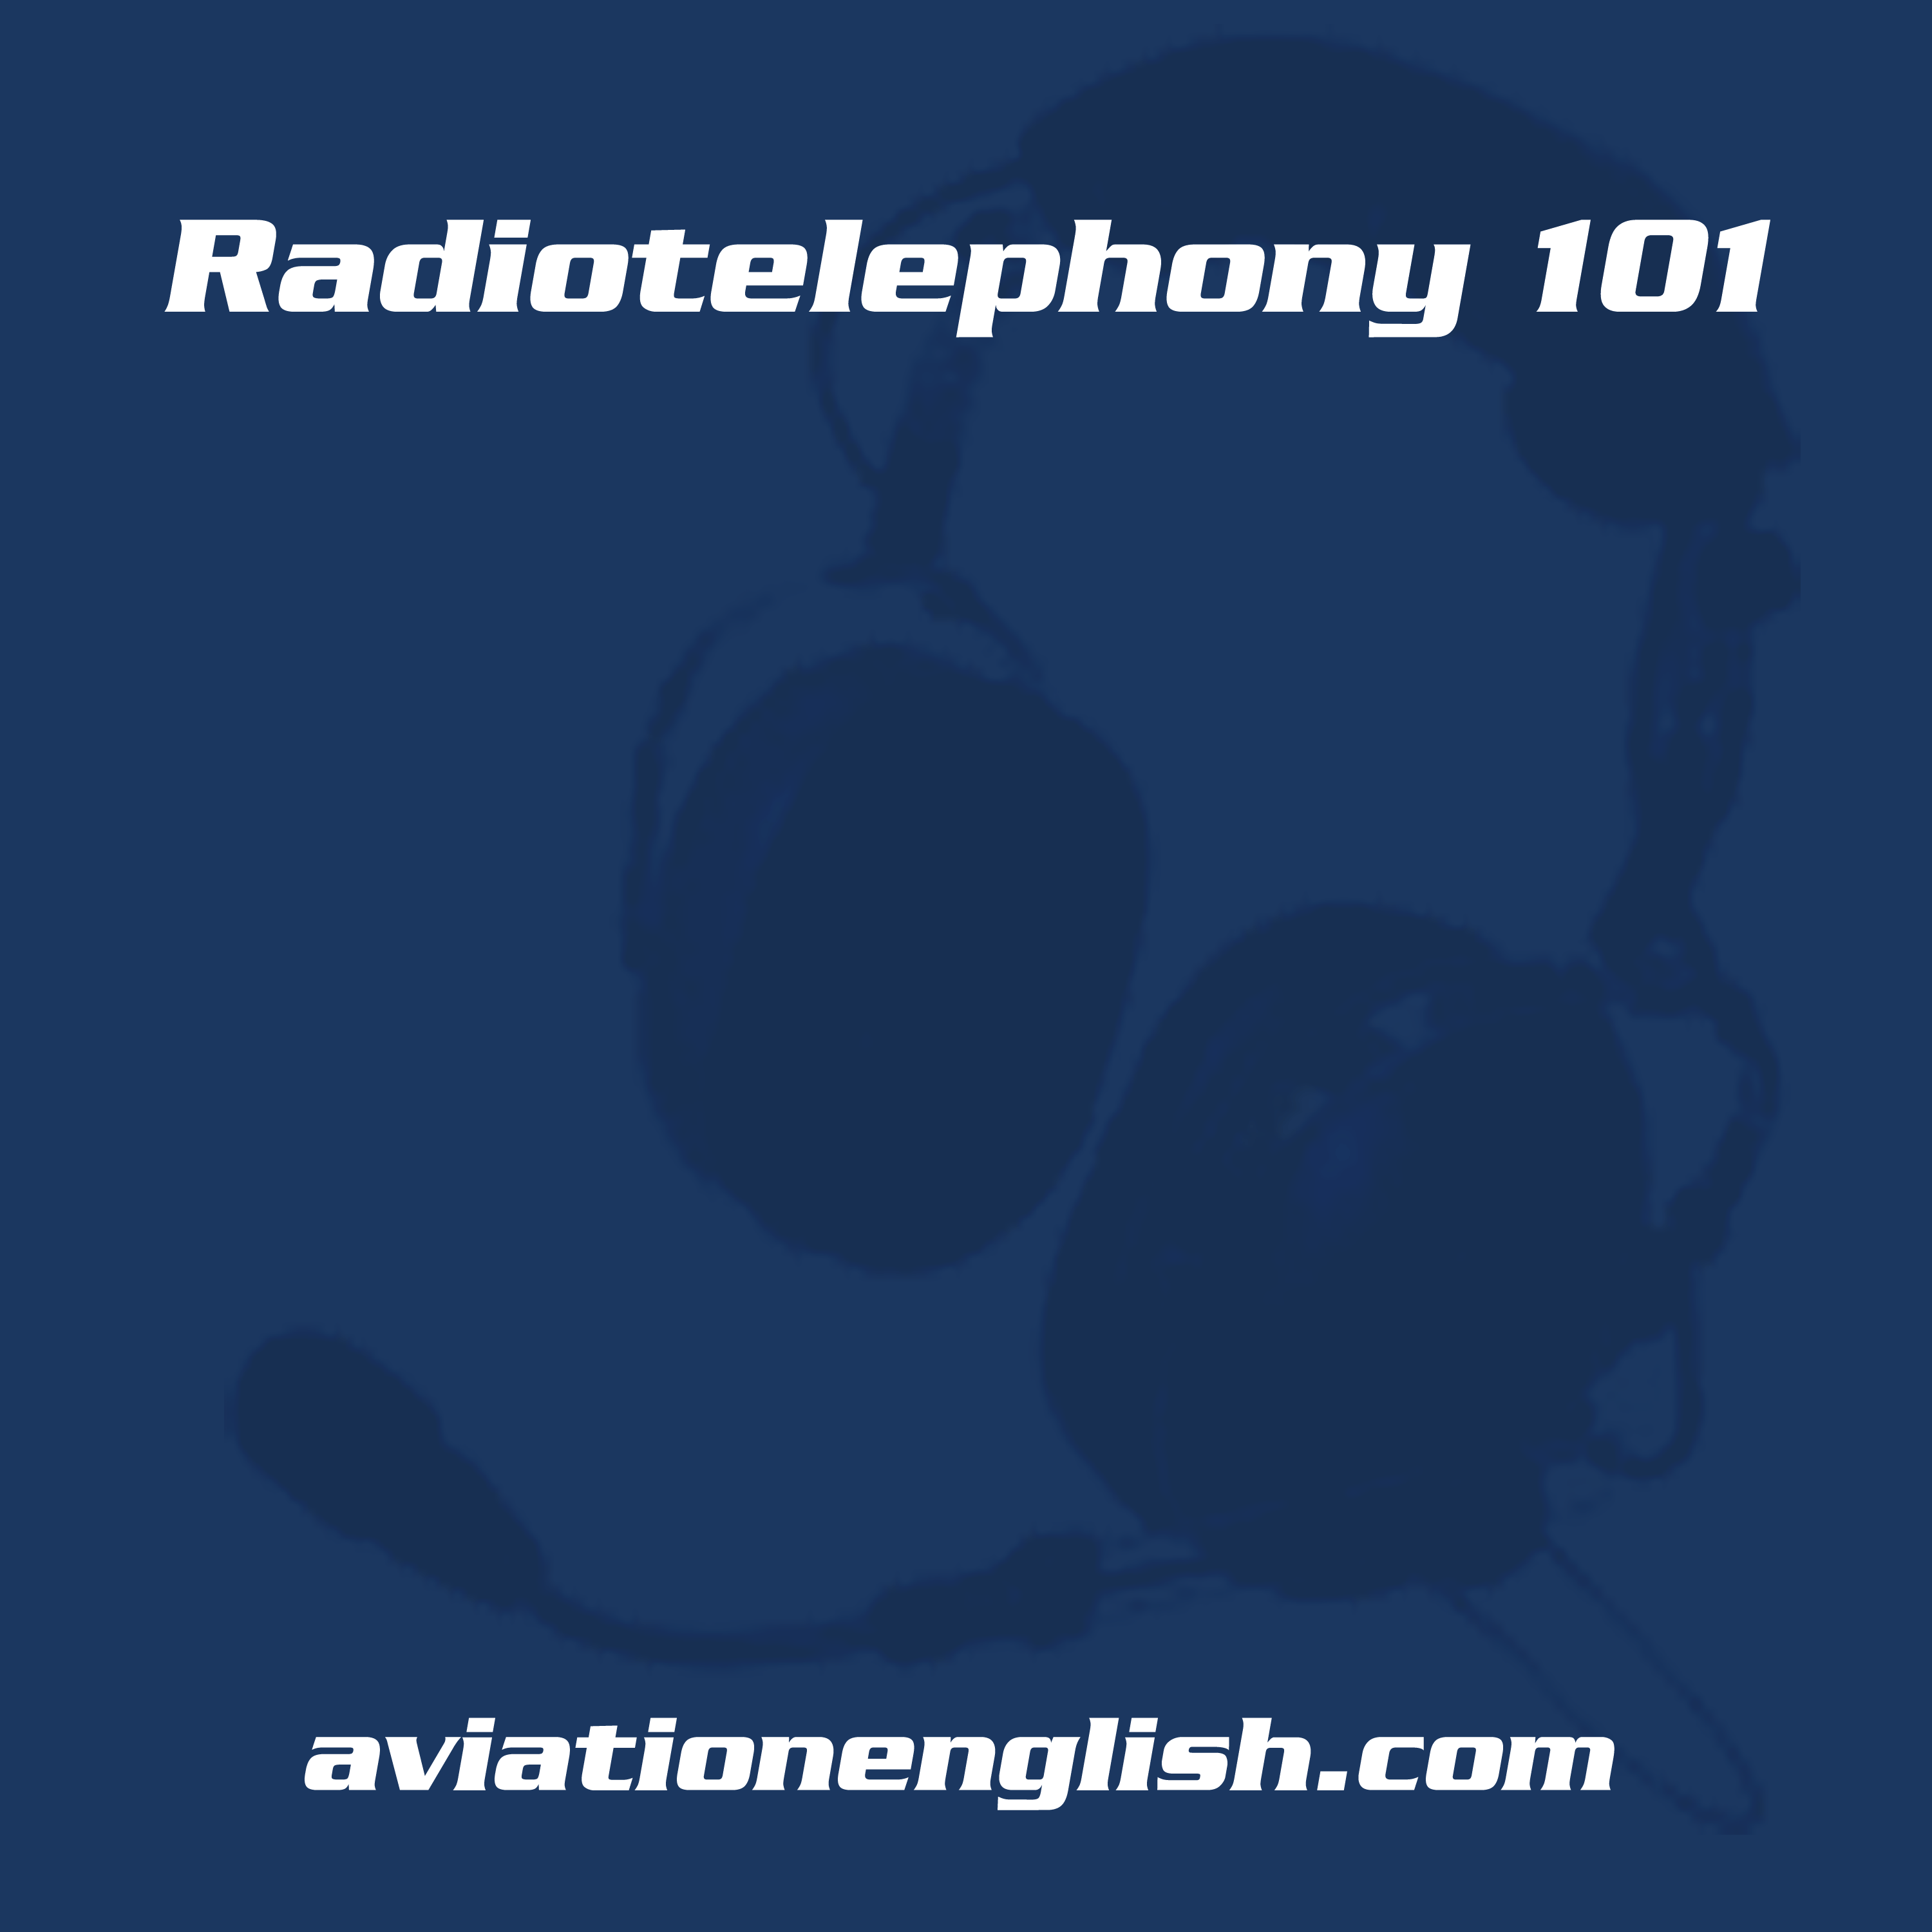 Radiotelephony101